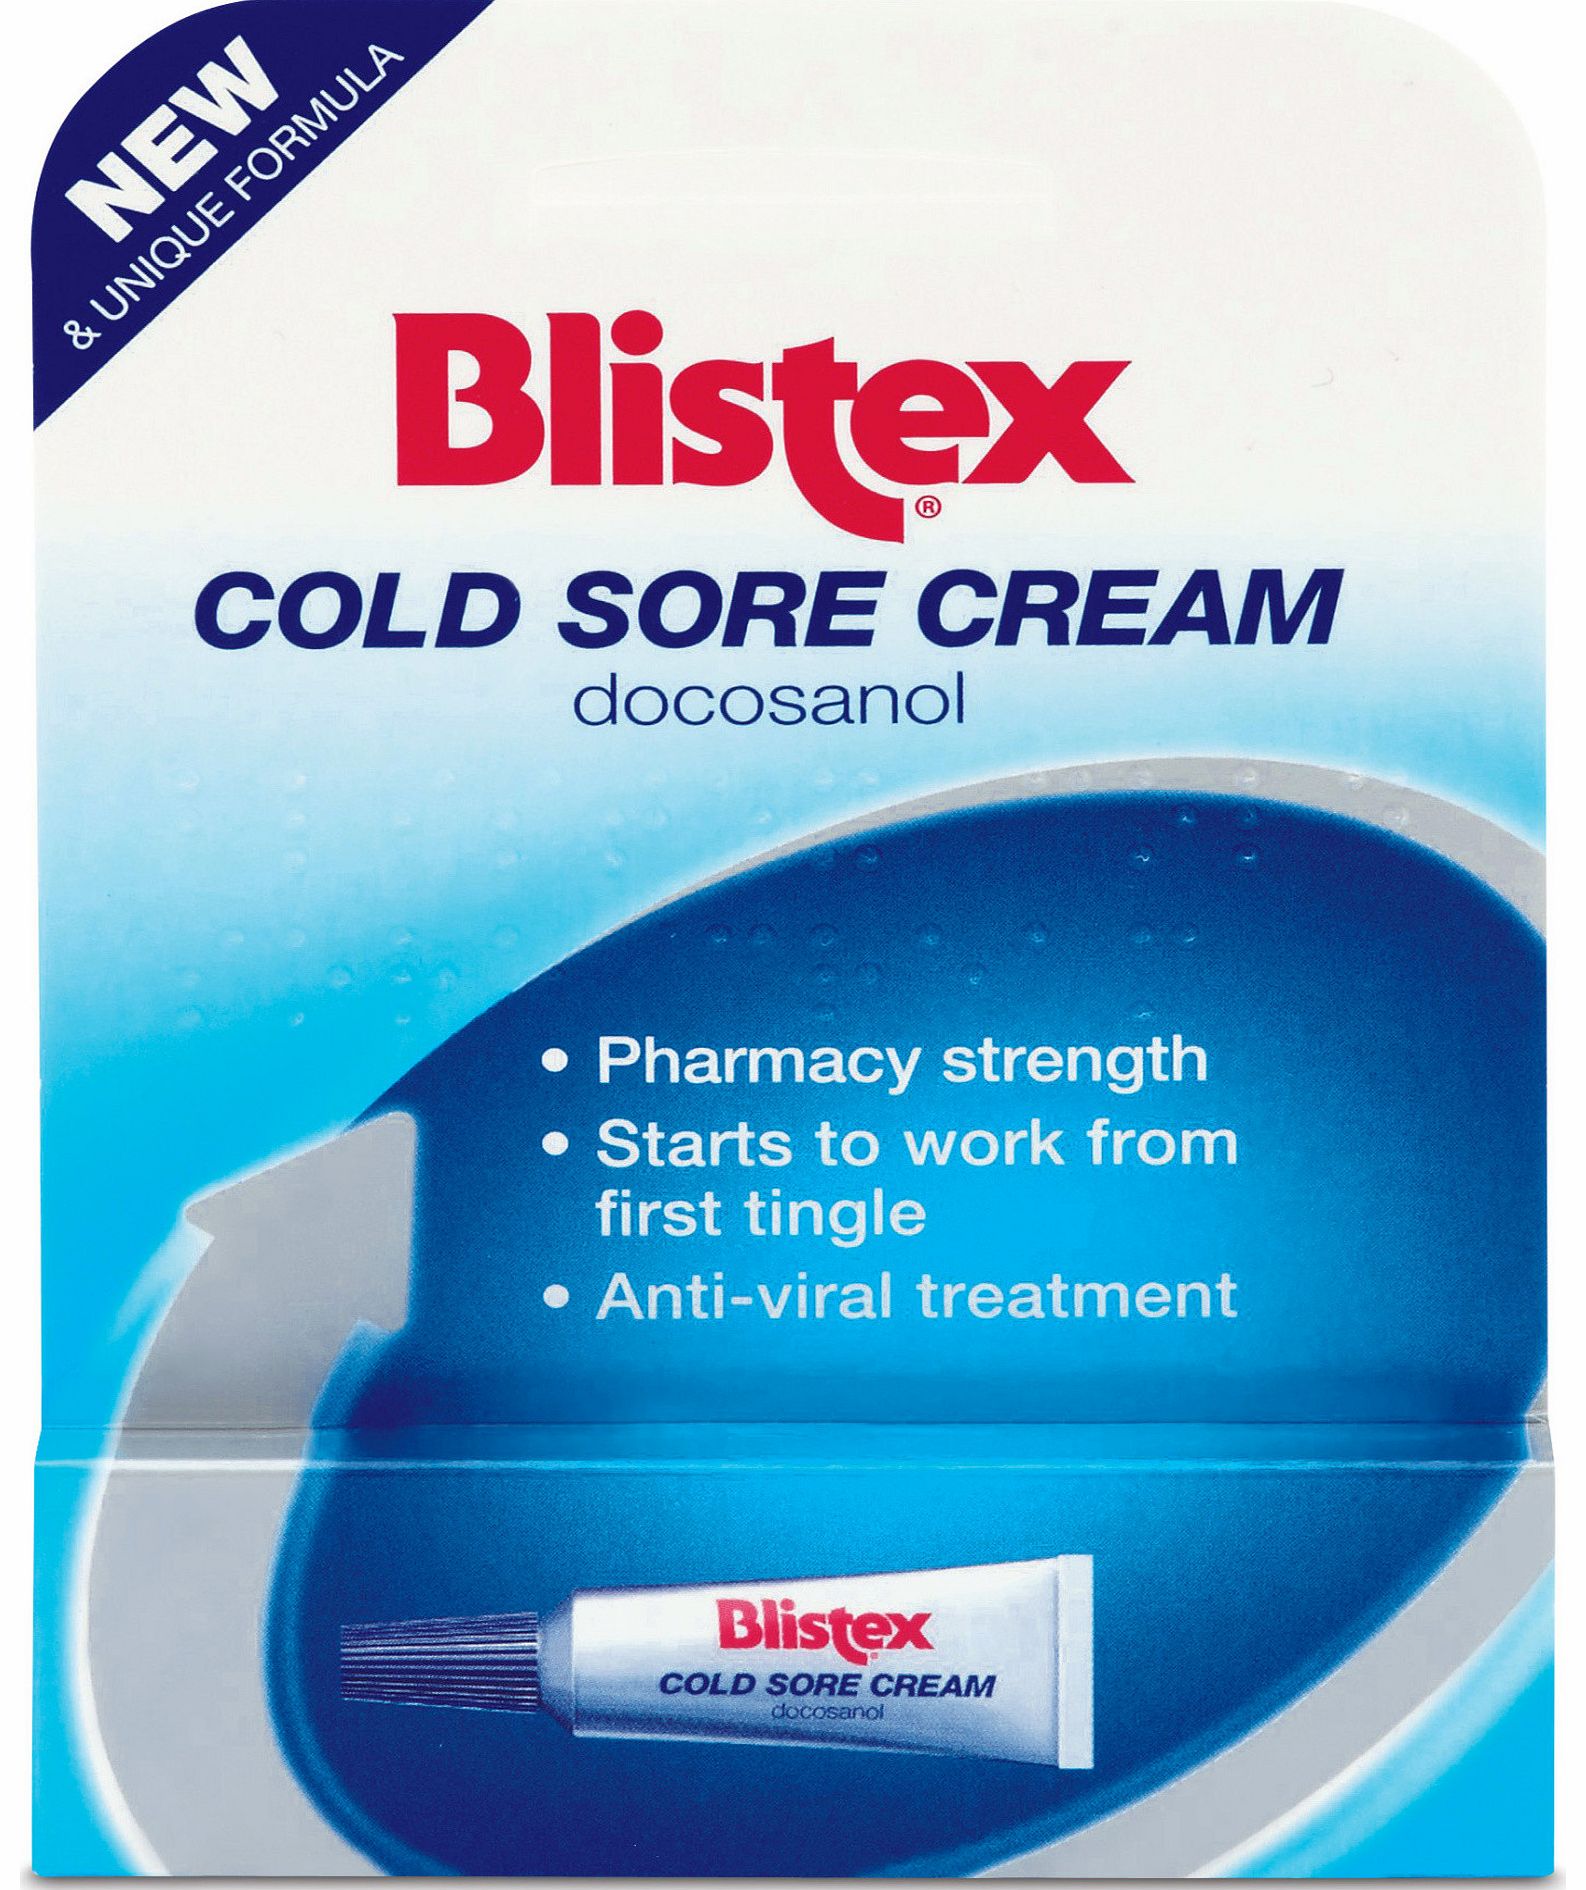 Blistex Cold Sore Cream